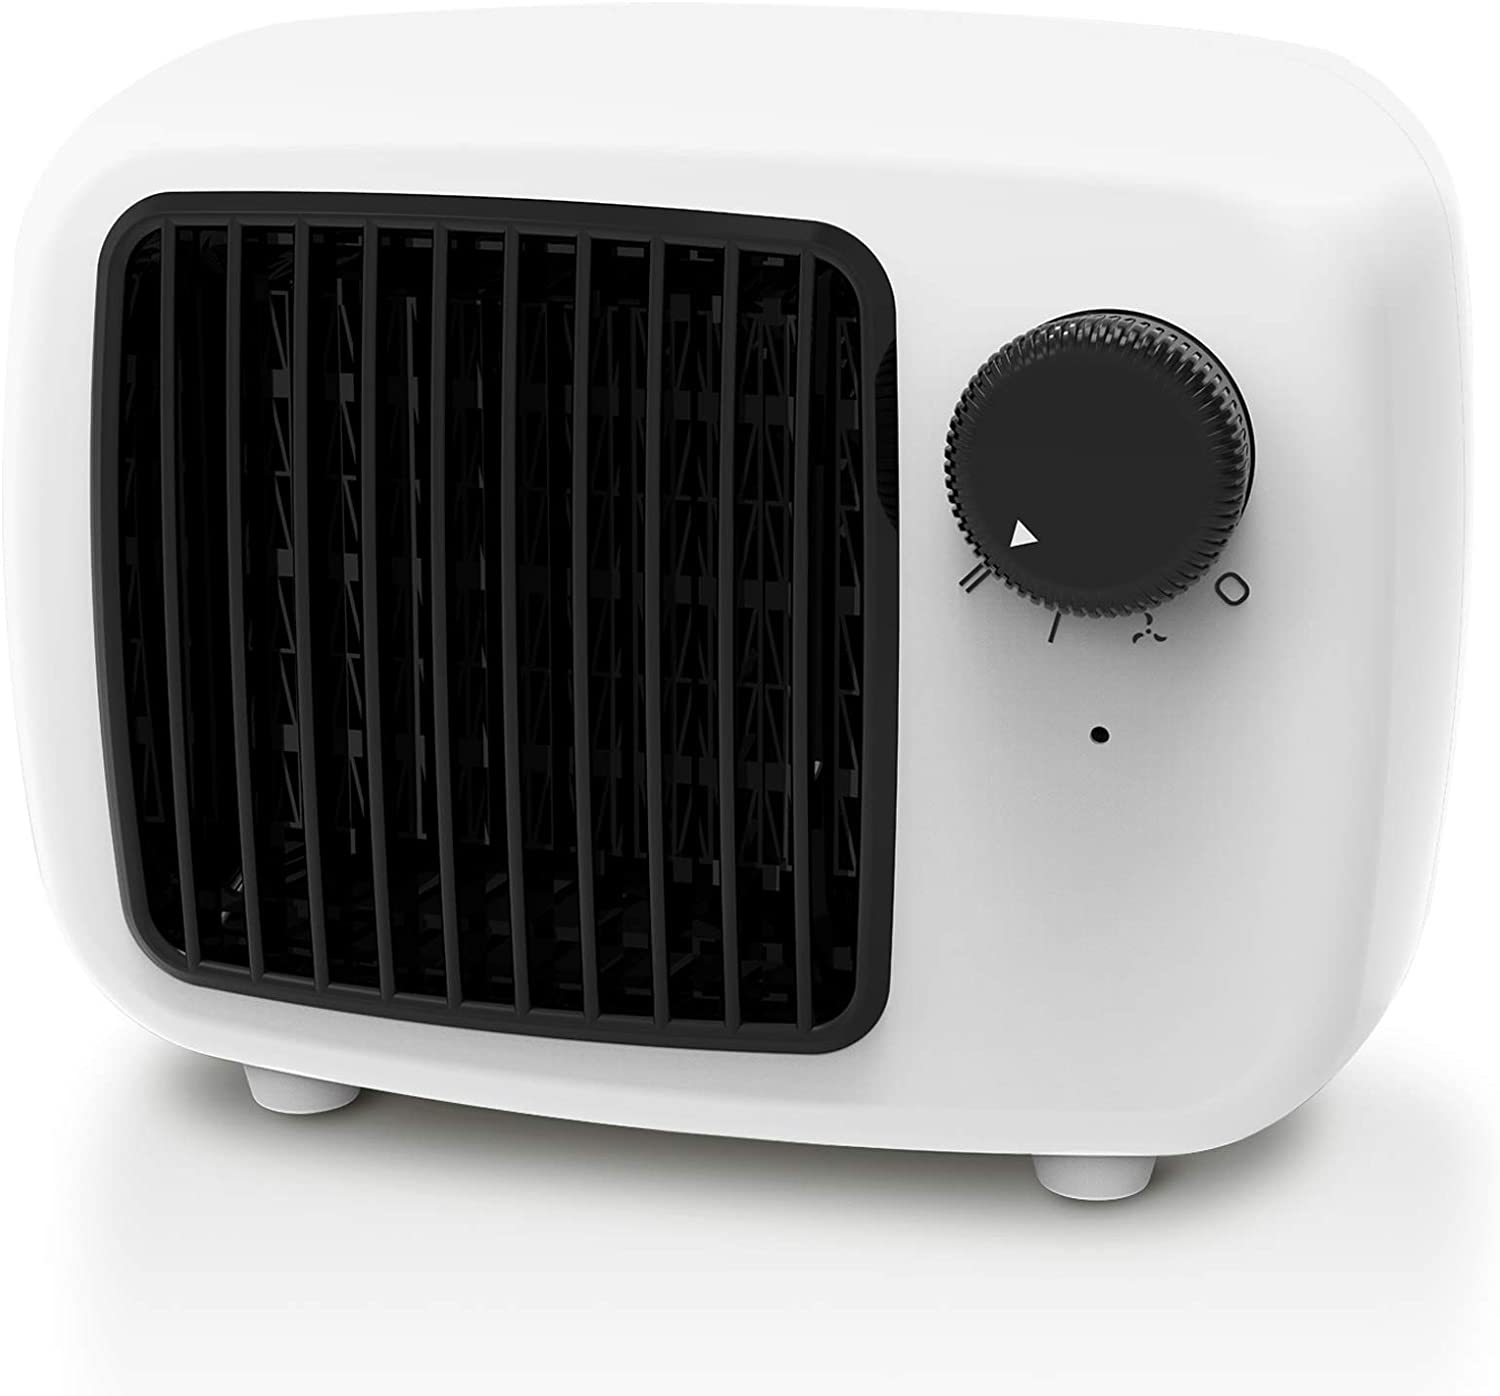  ZEEFO  Mini radiateur soufflant en céramique Blanc, radiateur électrique avec modes de chauffage 900W/600W, économie d’énergie avec protection contre la surchauffe et le basculement pour la maison/le bureau